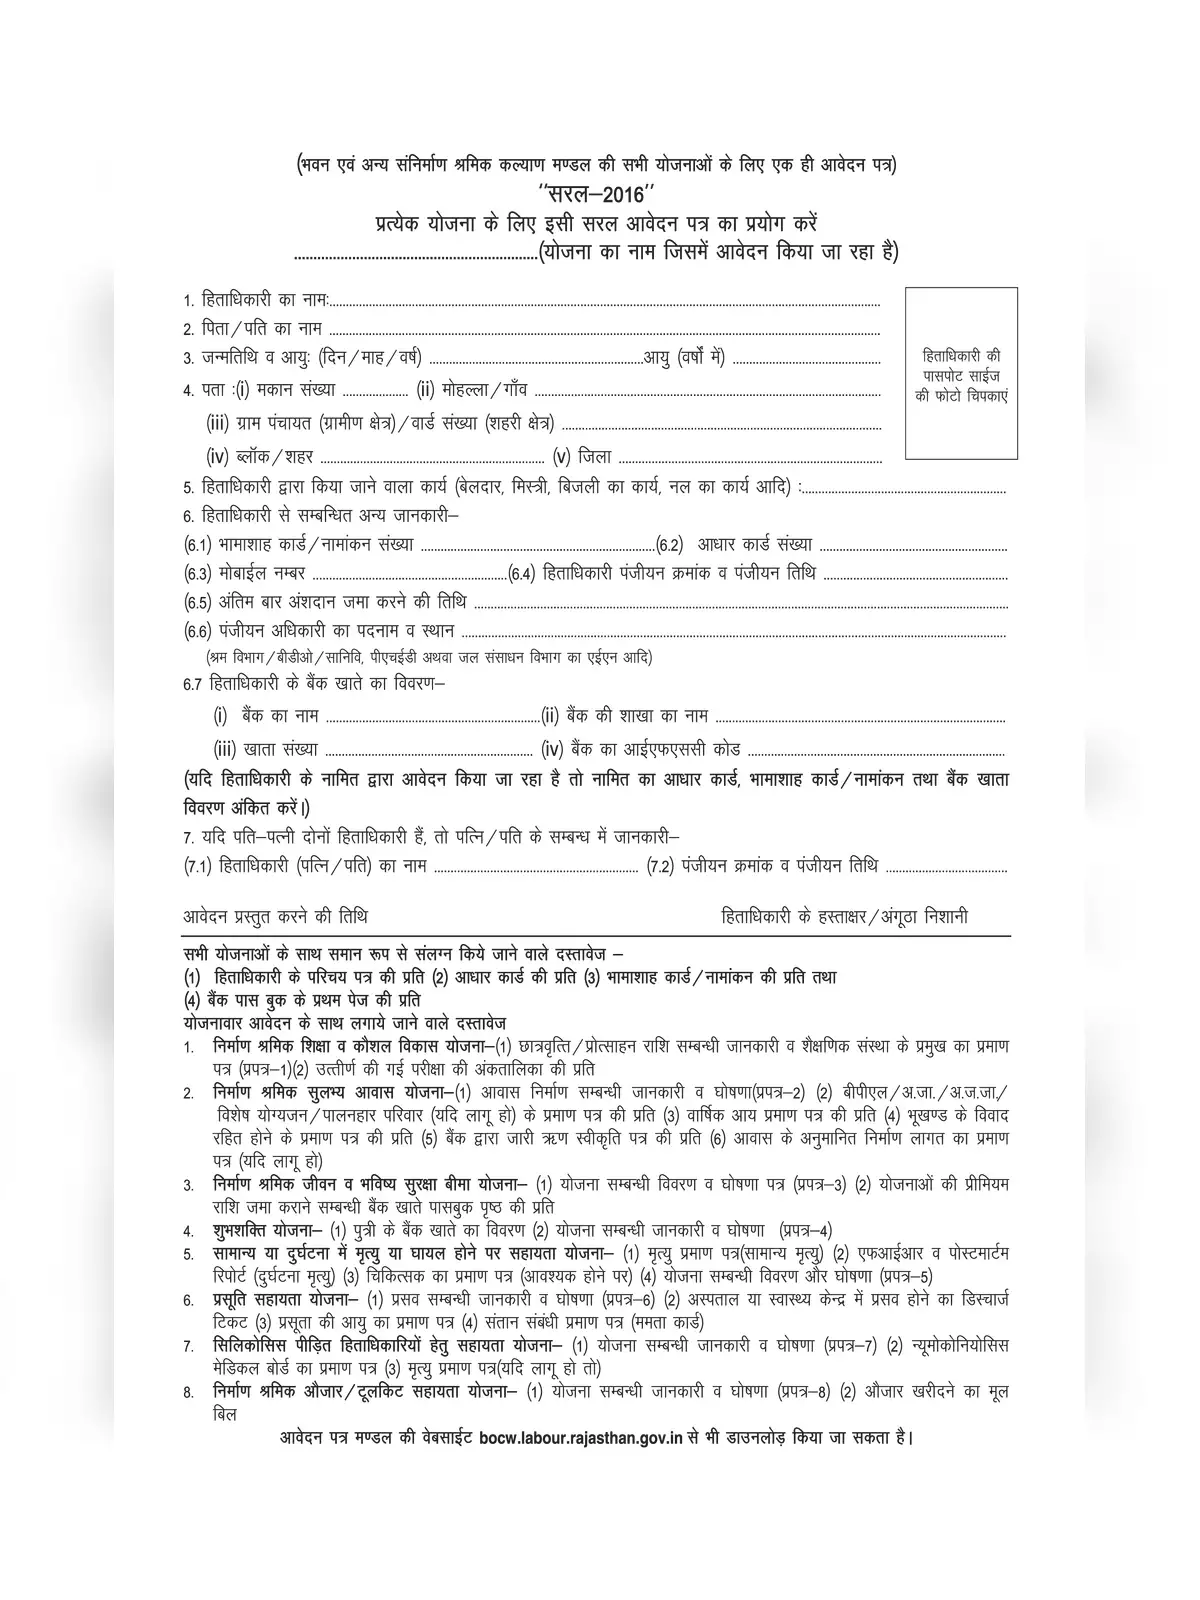 Shramik Card Scholarship Form Rajasthan